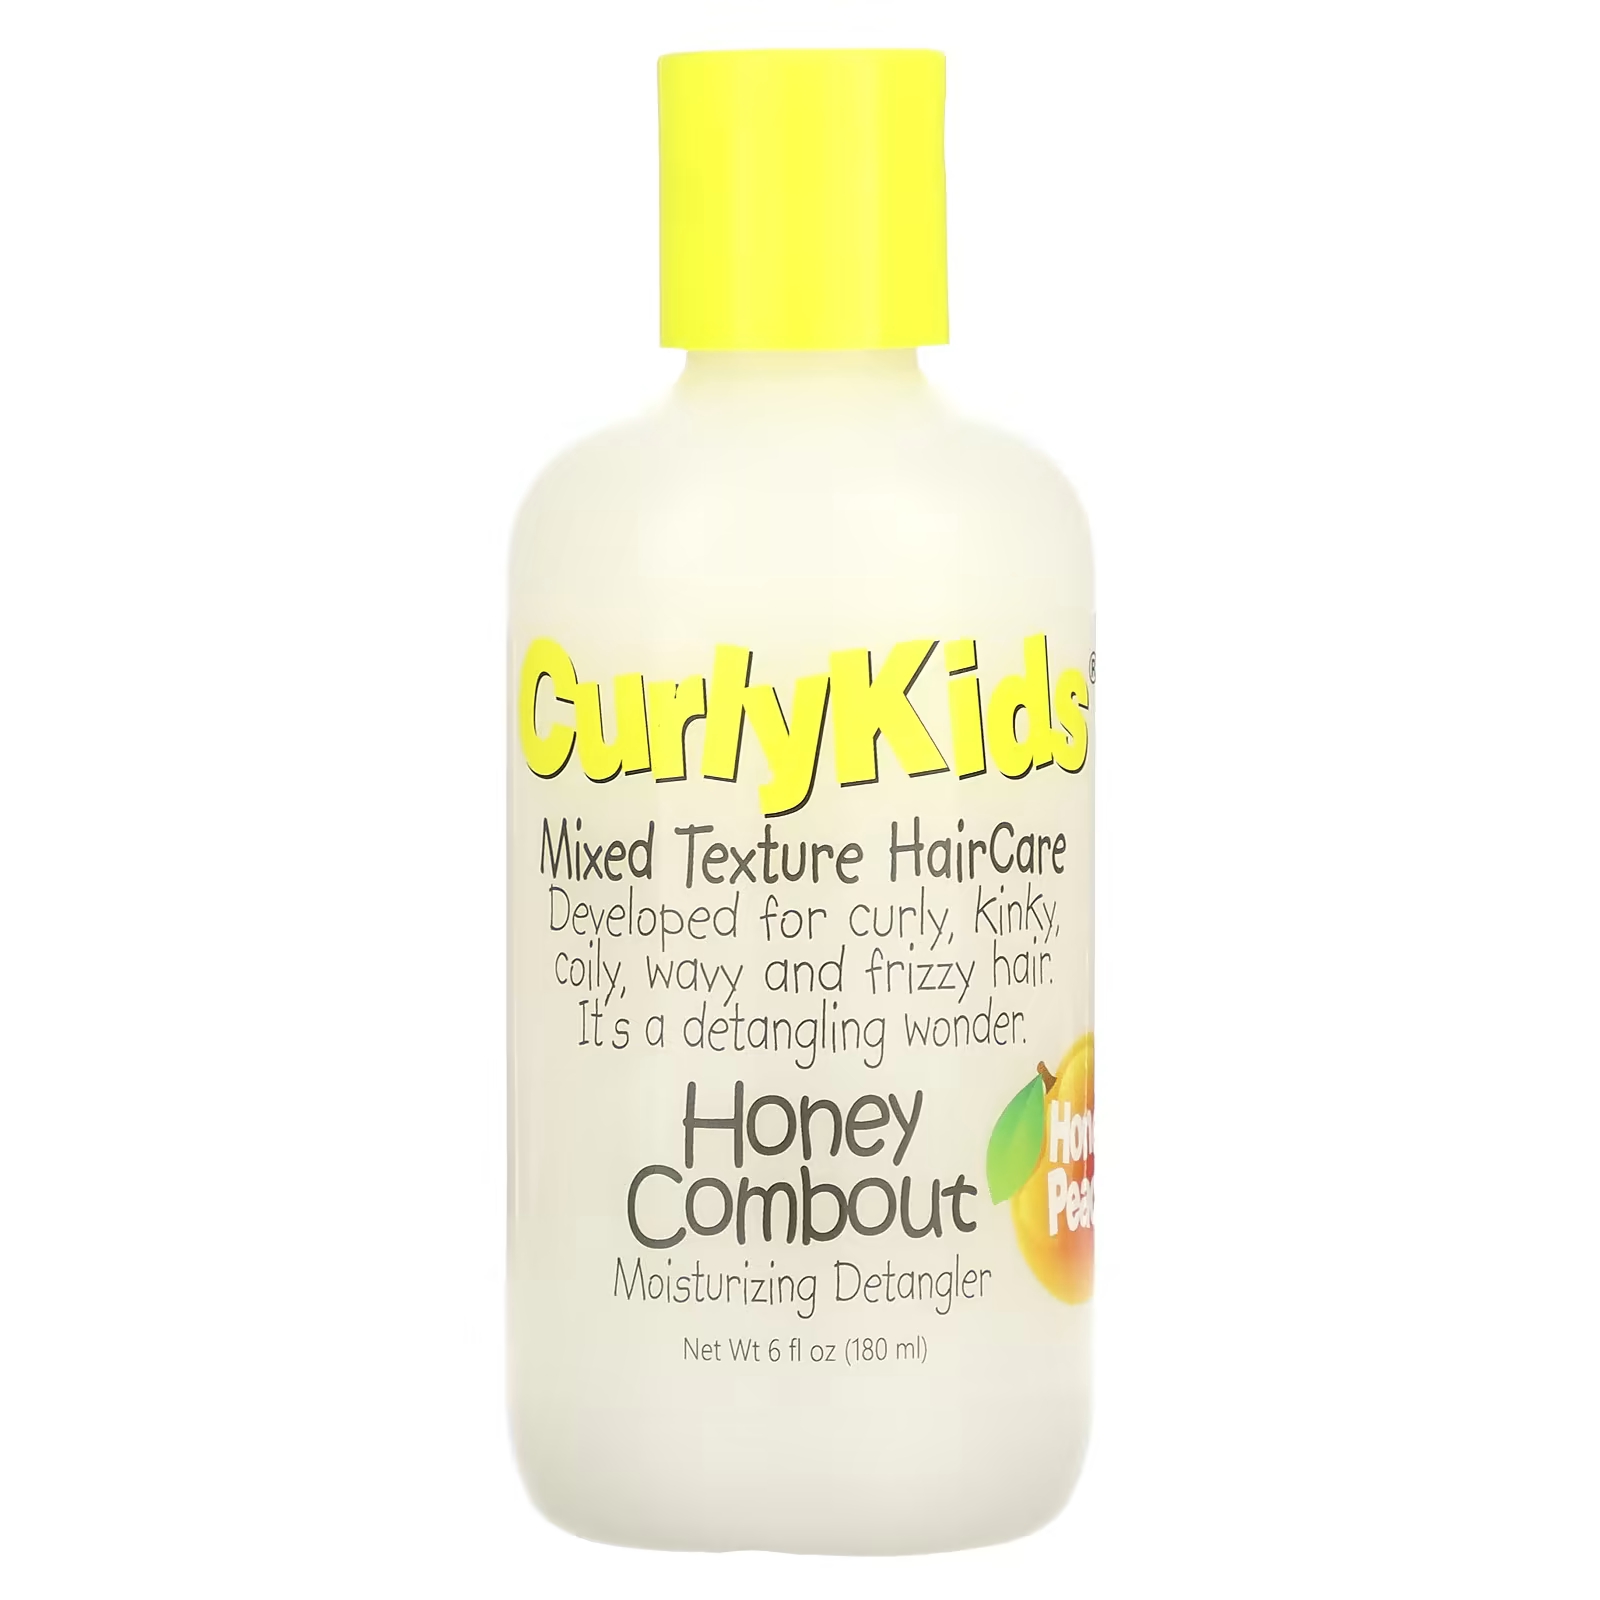 CurlyKids Honey Combout Увлажняющее средство для расчесывания волос Honey Peach, 6 жидких унций (180 мл) socozy средство от расчесывания волос и несмываемого состояния 5 2 жидких унций 154 мл